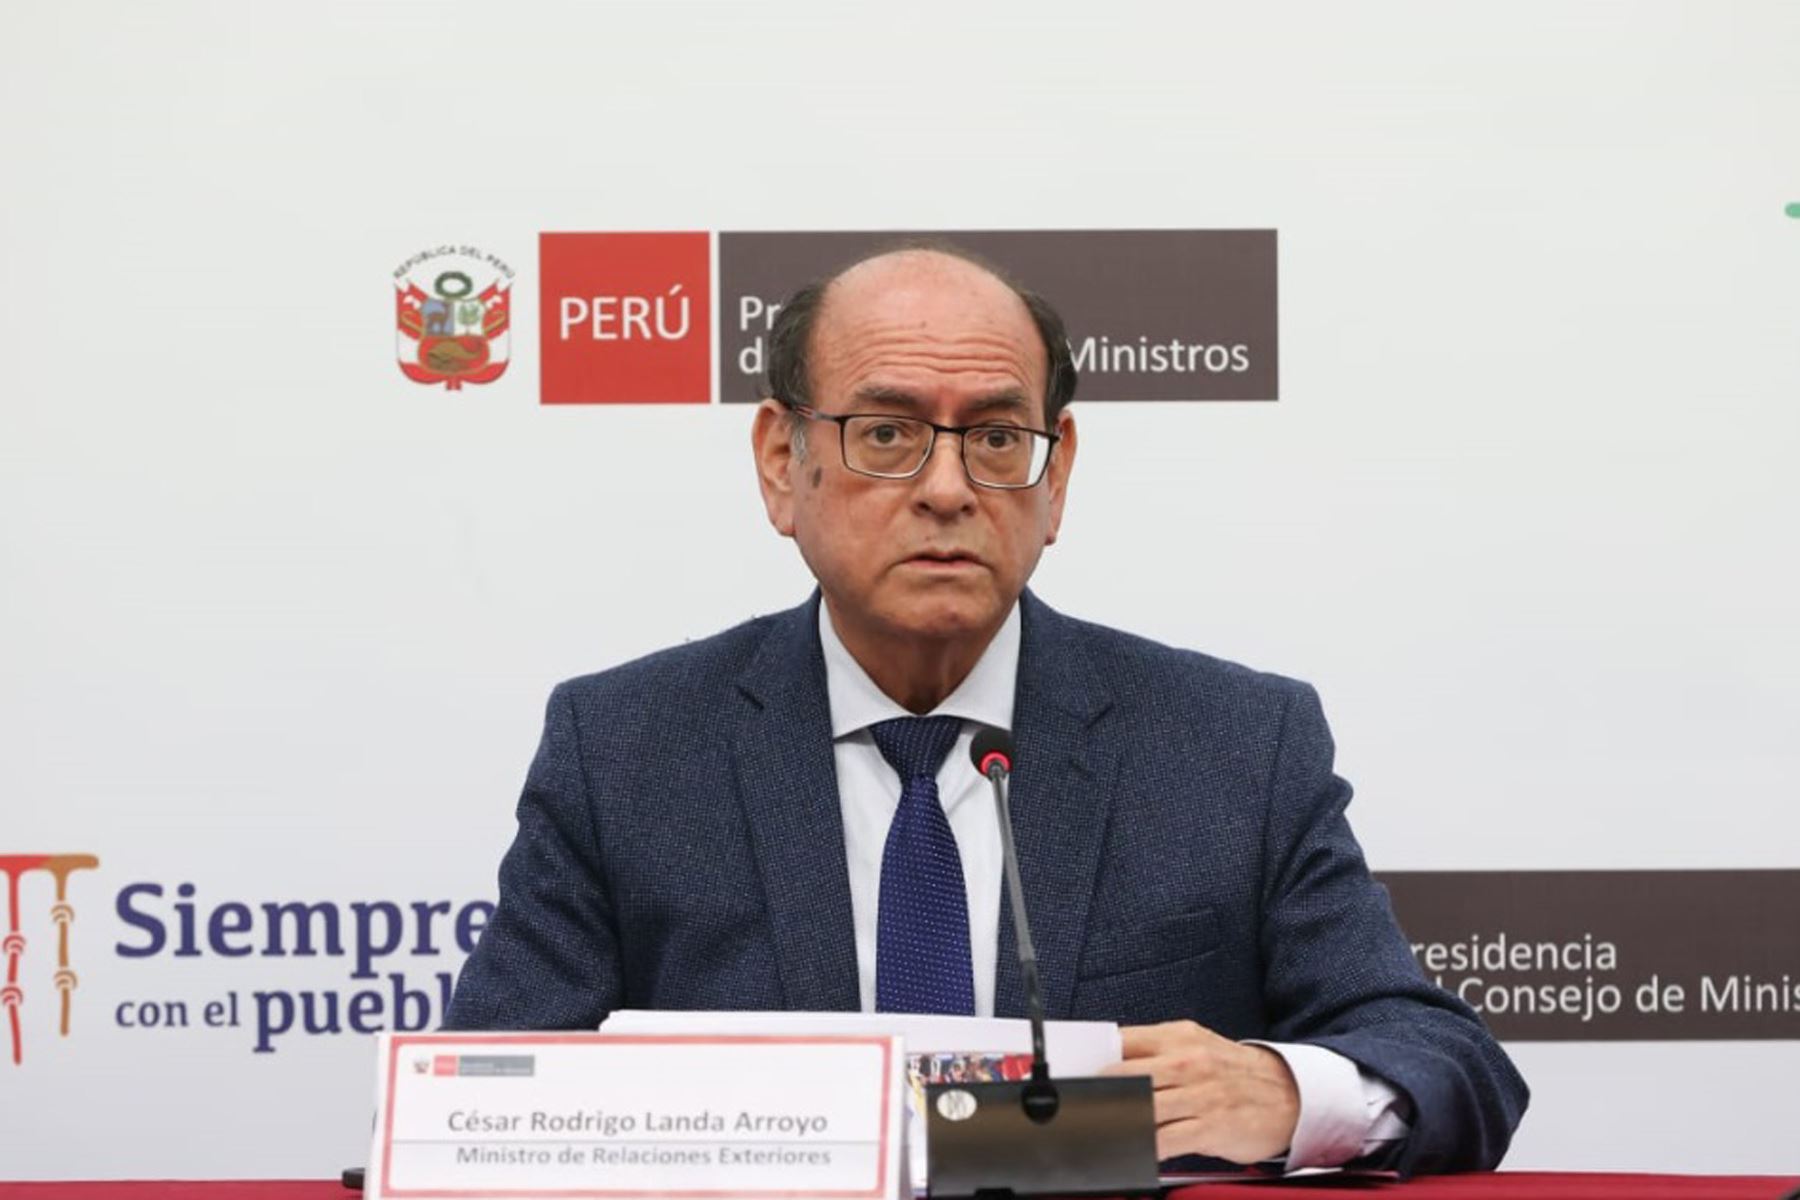 Ministro de Relaciones Exteriores, César Landa en representación del Poder Ejecutivo, brinda  conferencia de prensa para informar sobre aspectos de interés nacional.
Foto: PCM